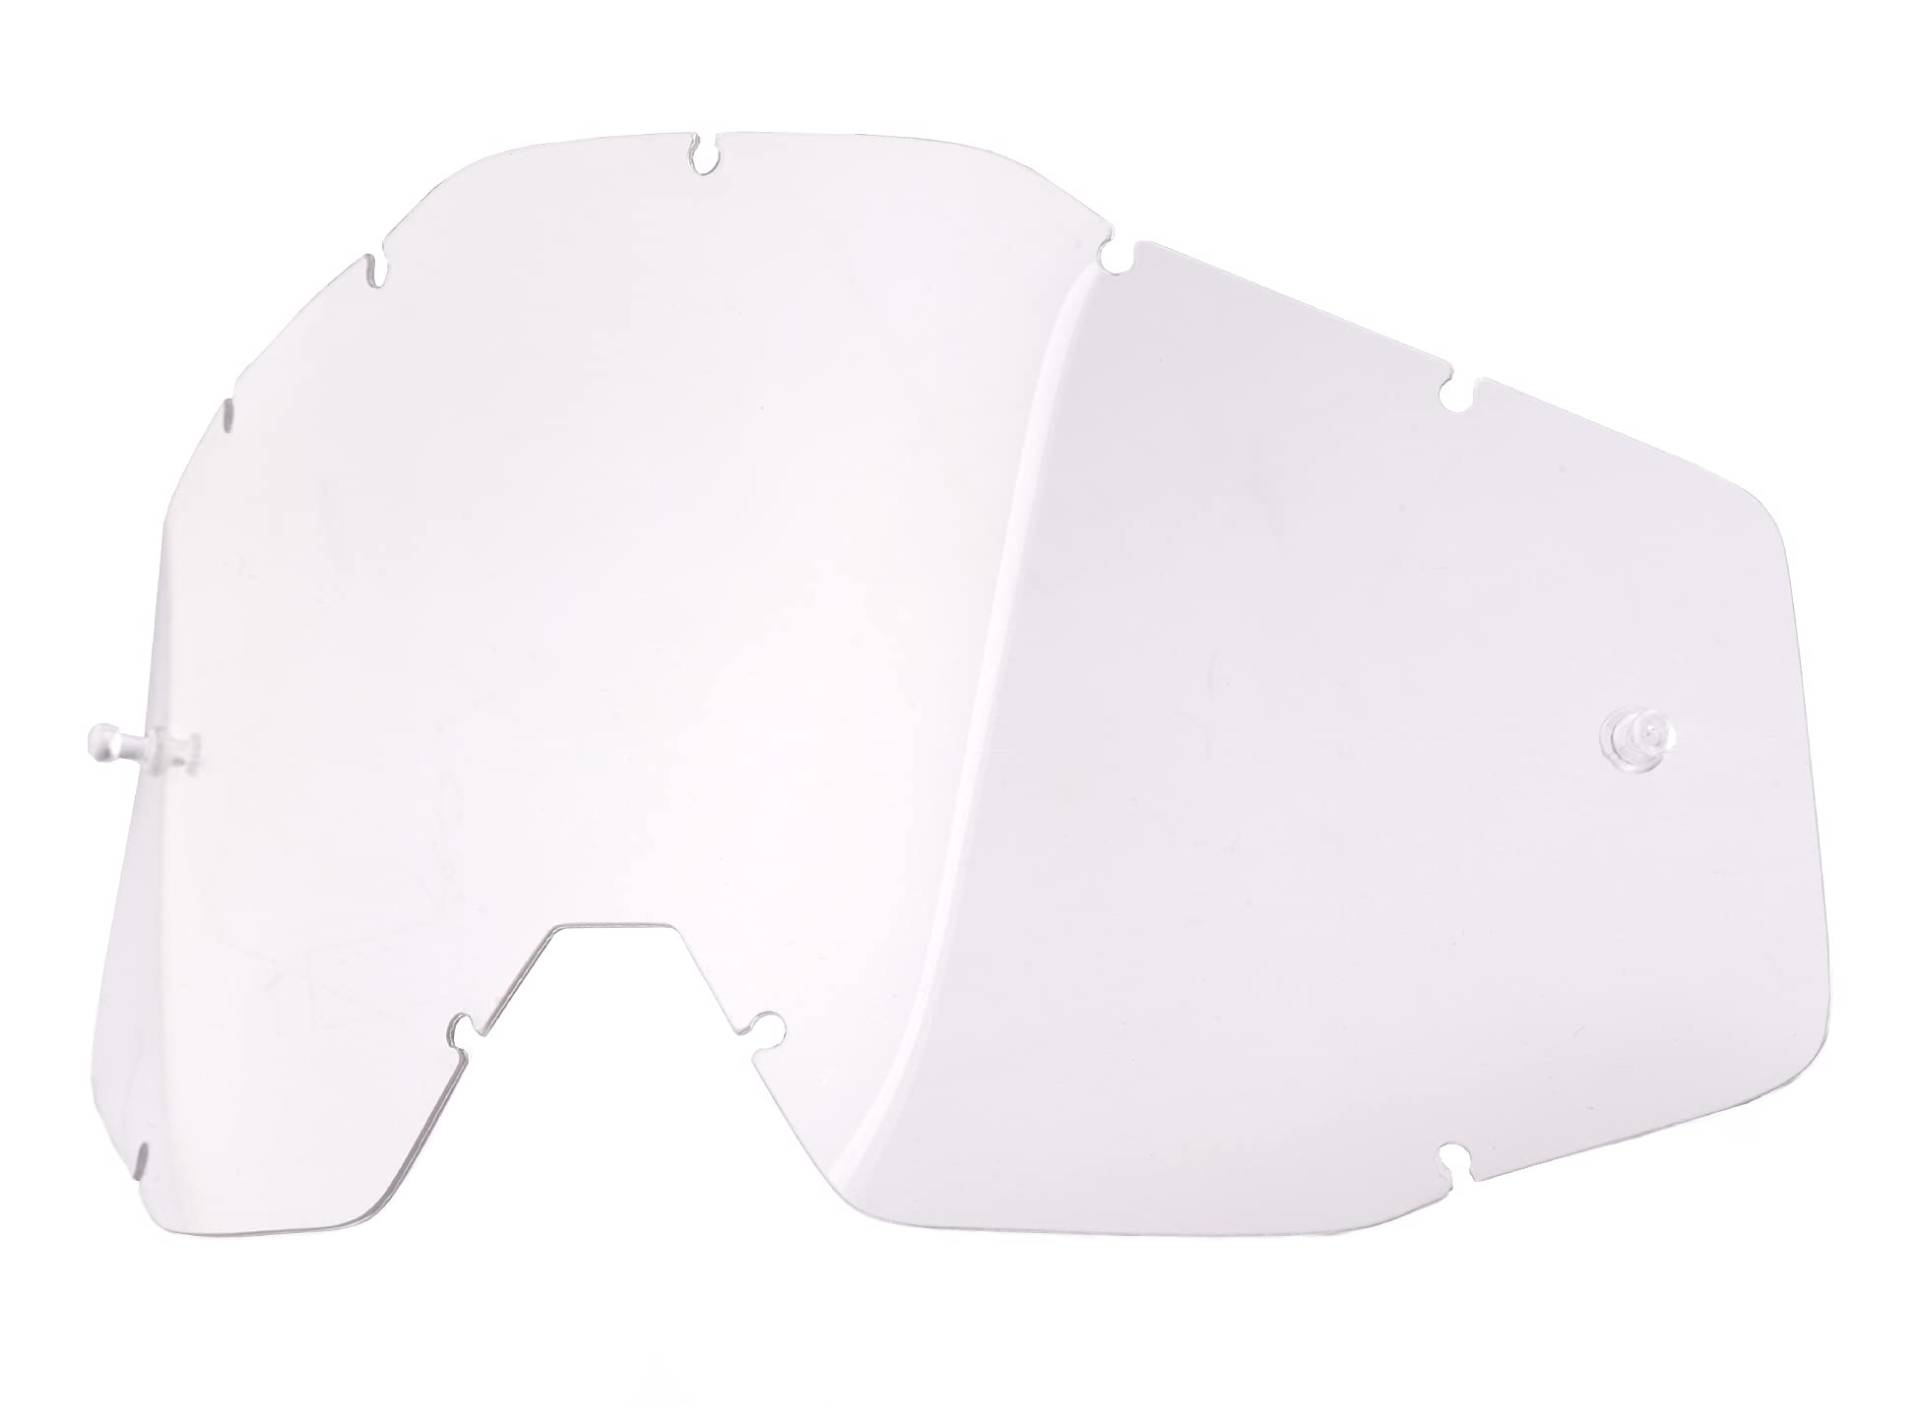 100 % Brillen-Ersatzglas – Blatt – kompatibel mit Racecraft 1, Accuri 1 und Strata 1 Brillen von Unbekannt